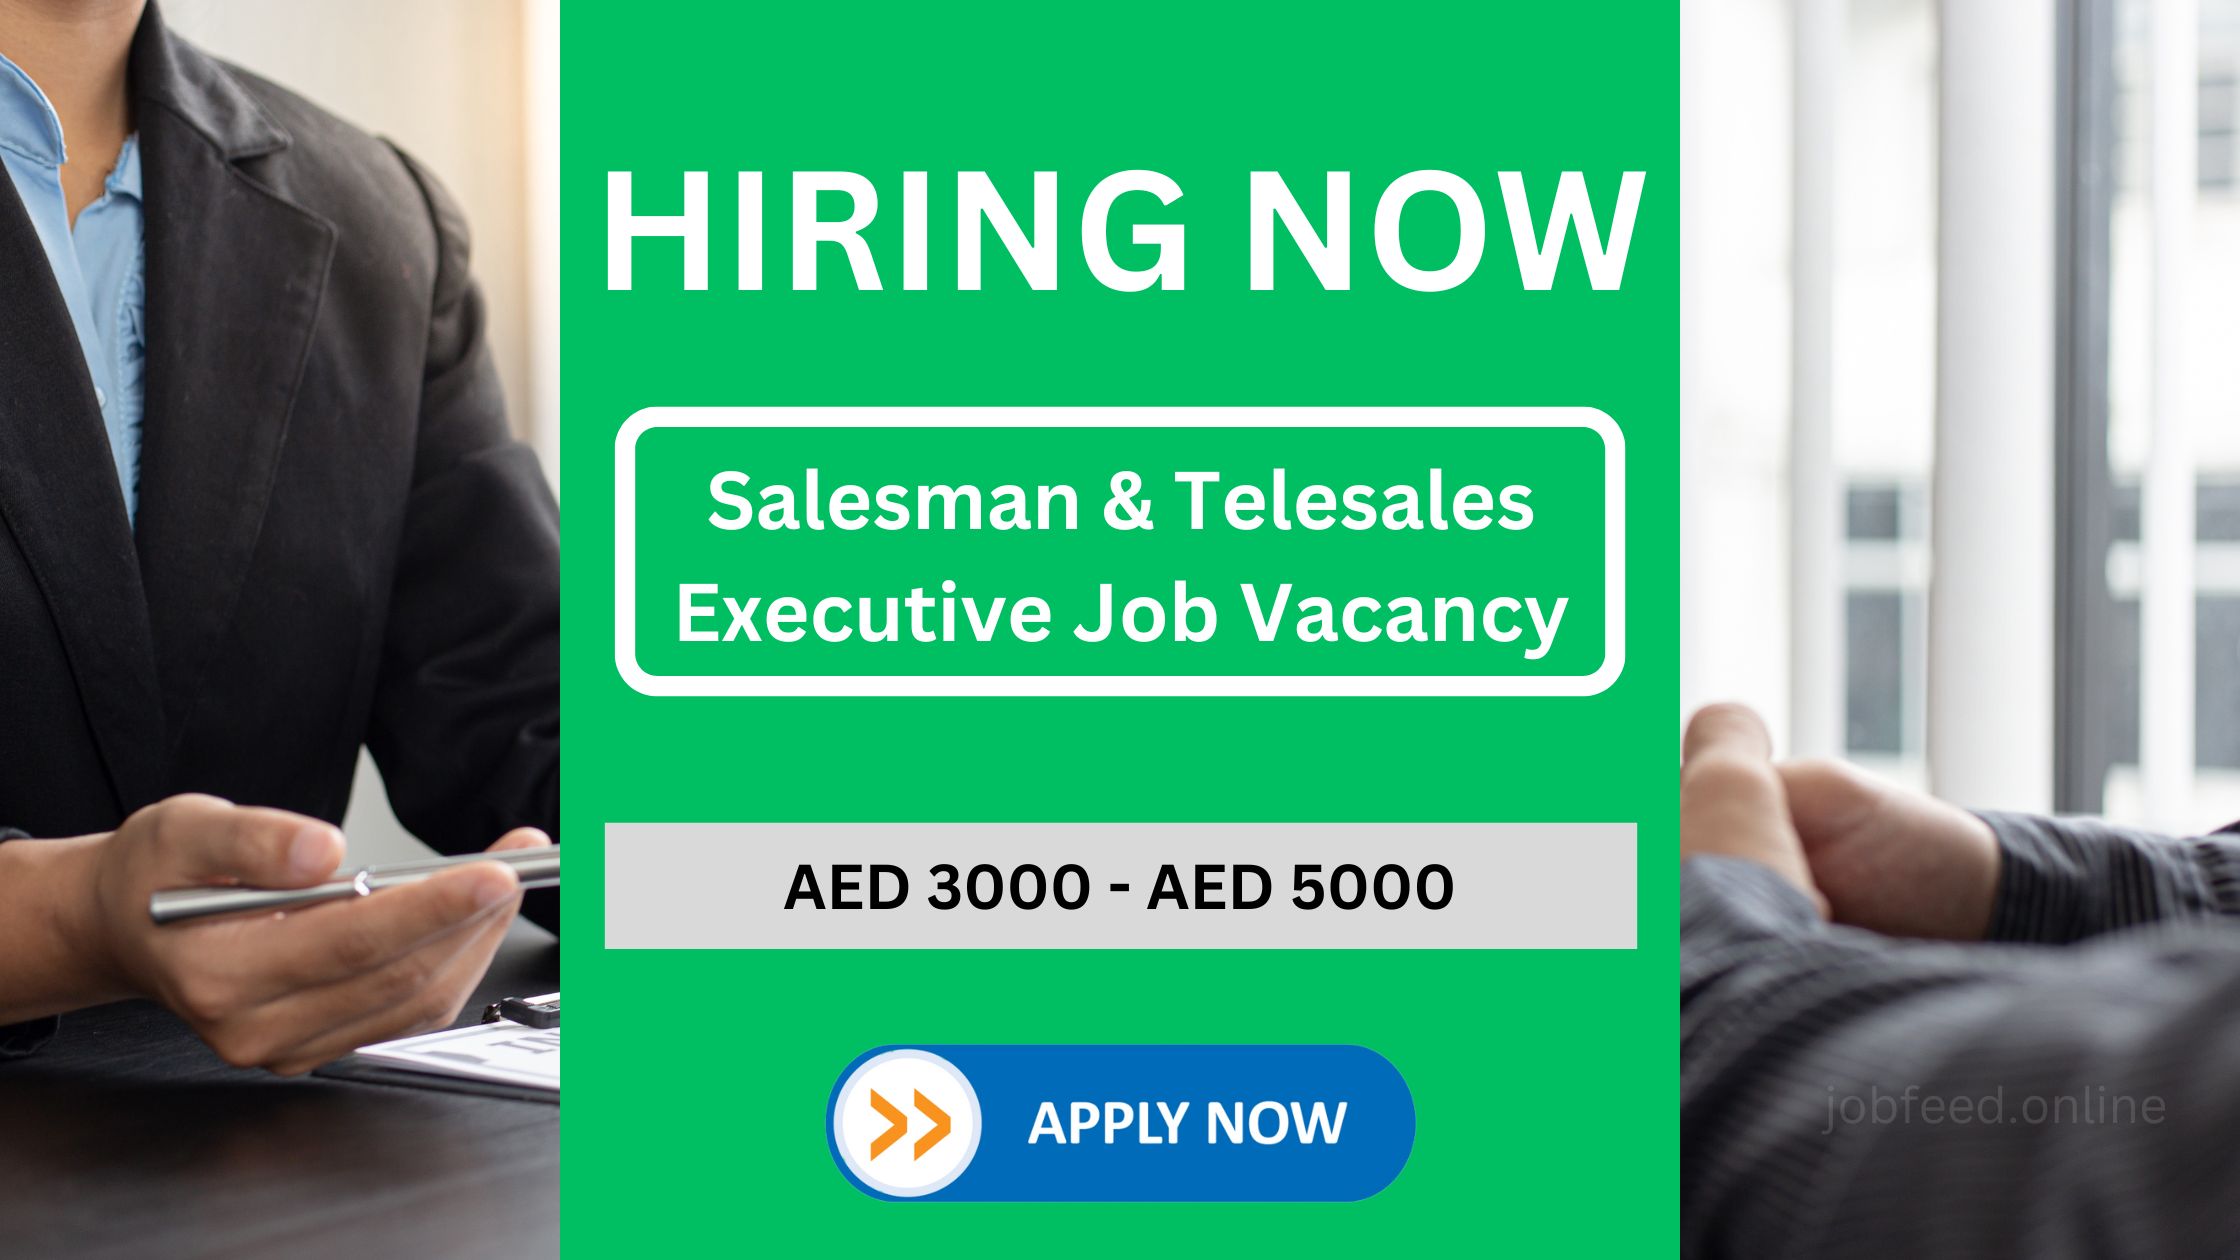 Salesman & Telesales Executive Job Vacancy for Indian Nationalities